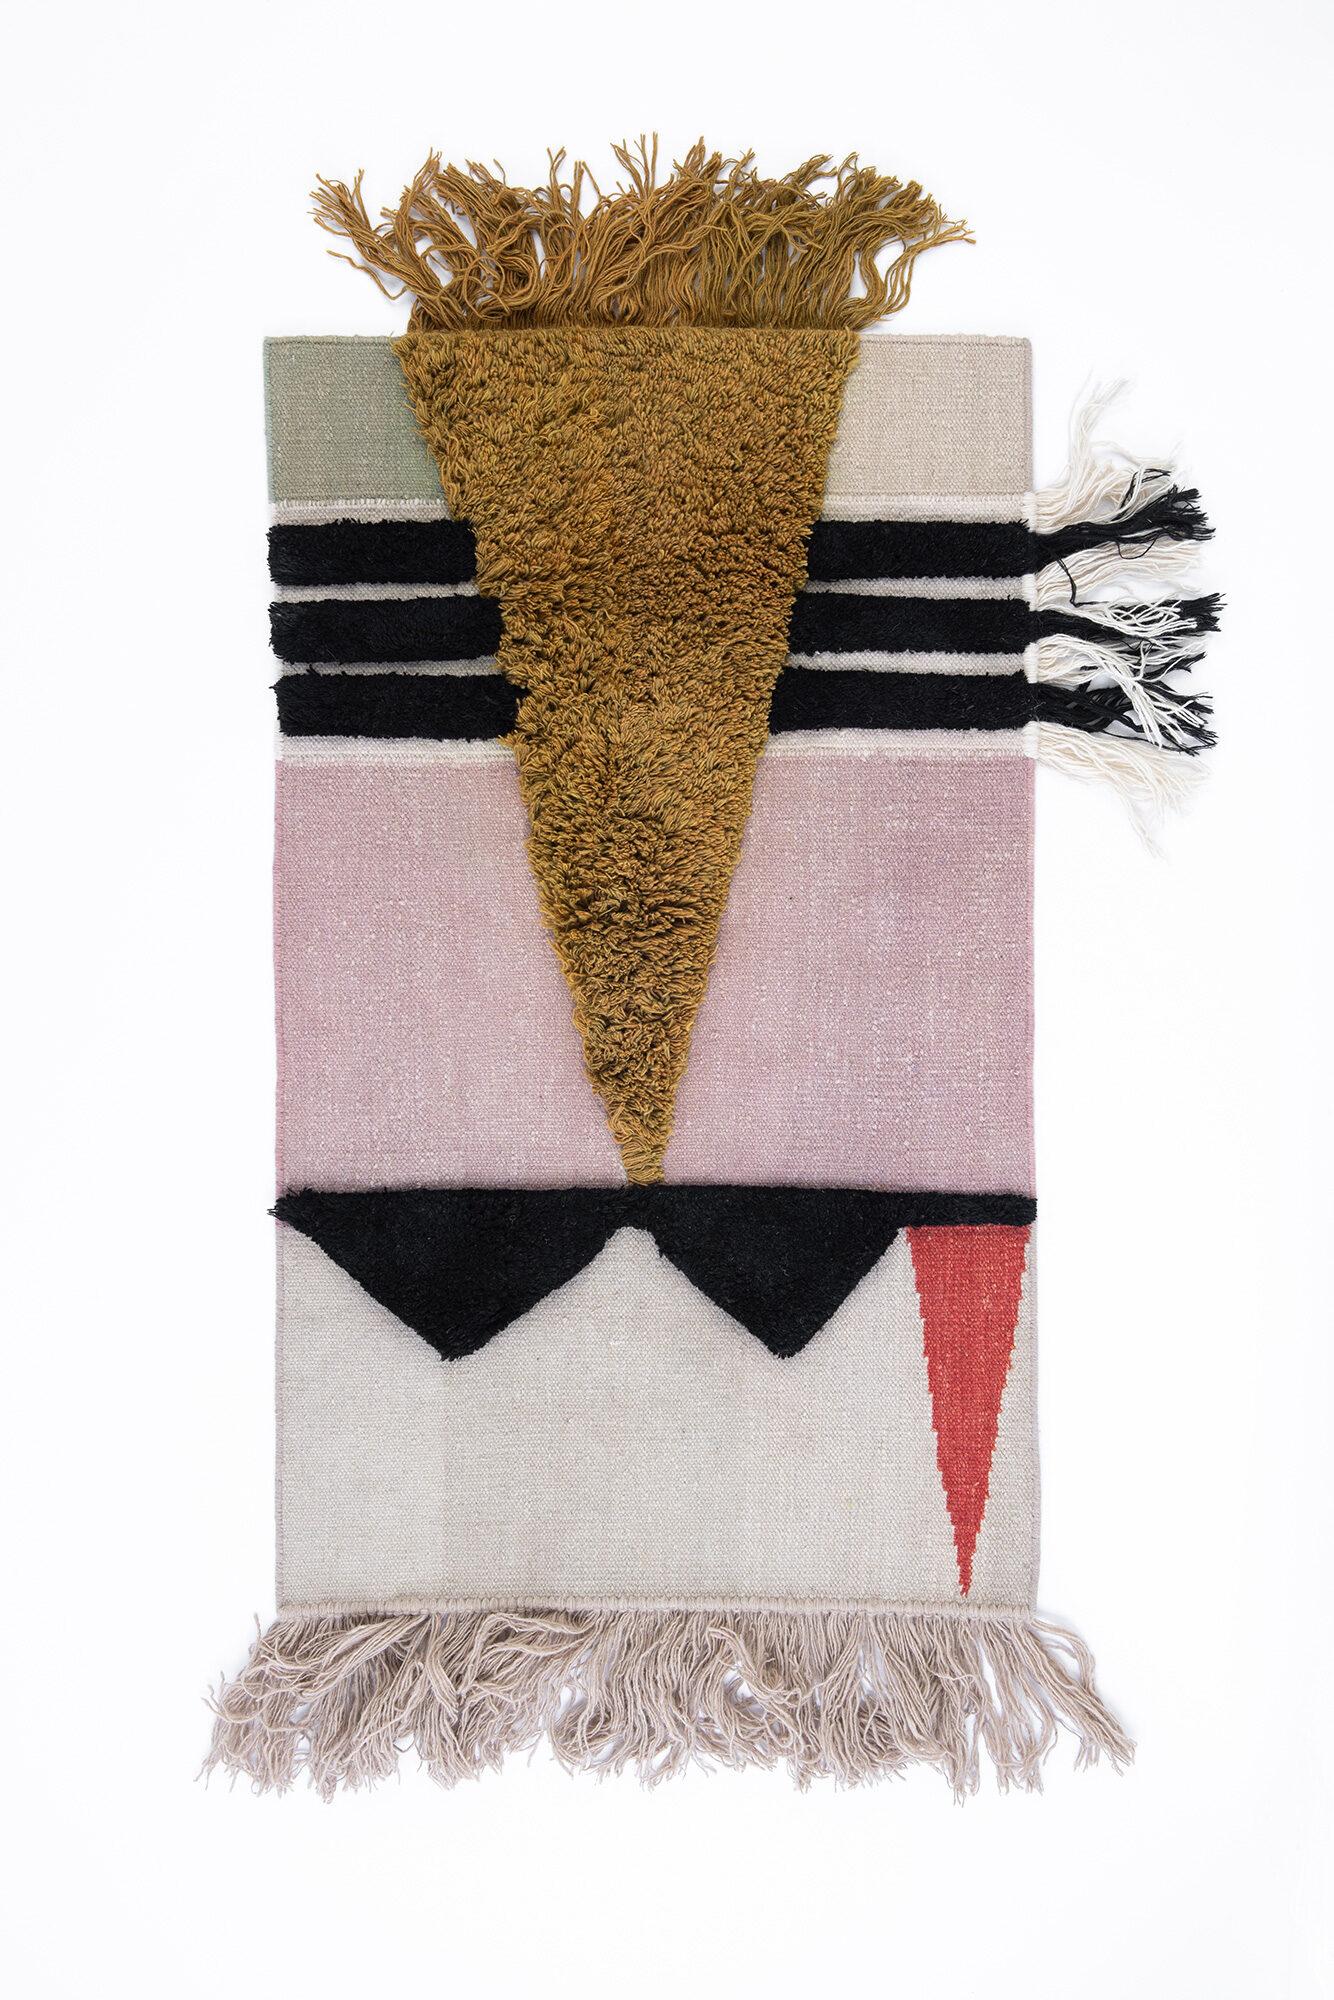 Handgeknüpftes Textil Poster #12 von Lyk carpet
Ein Unikat.
Abmessungen: B 85 x L 140 cm.
MATERIALIEN: 100% handgesponnene tibetische Hochlandwolle von lebenden Schafen, traditionell pflanzengefärbt, kannengefärbt.
Manuelle Techniken und